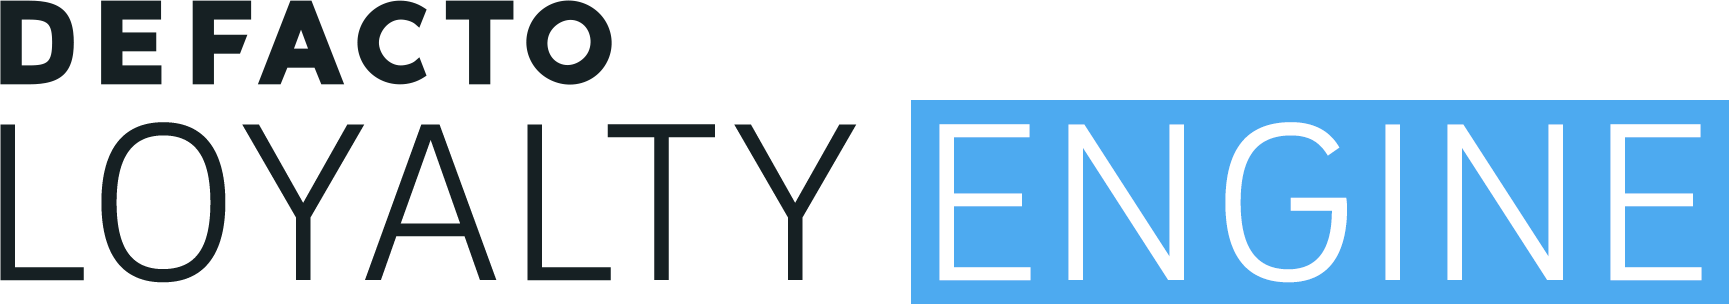 DEFACTO Loyalty Engine - Logo